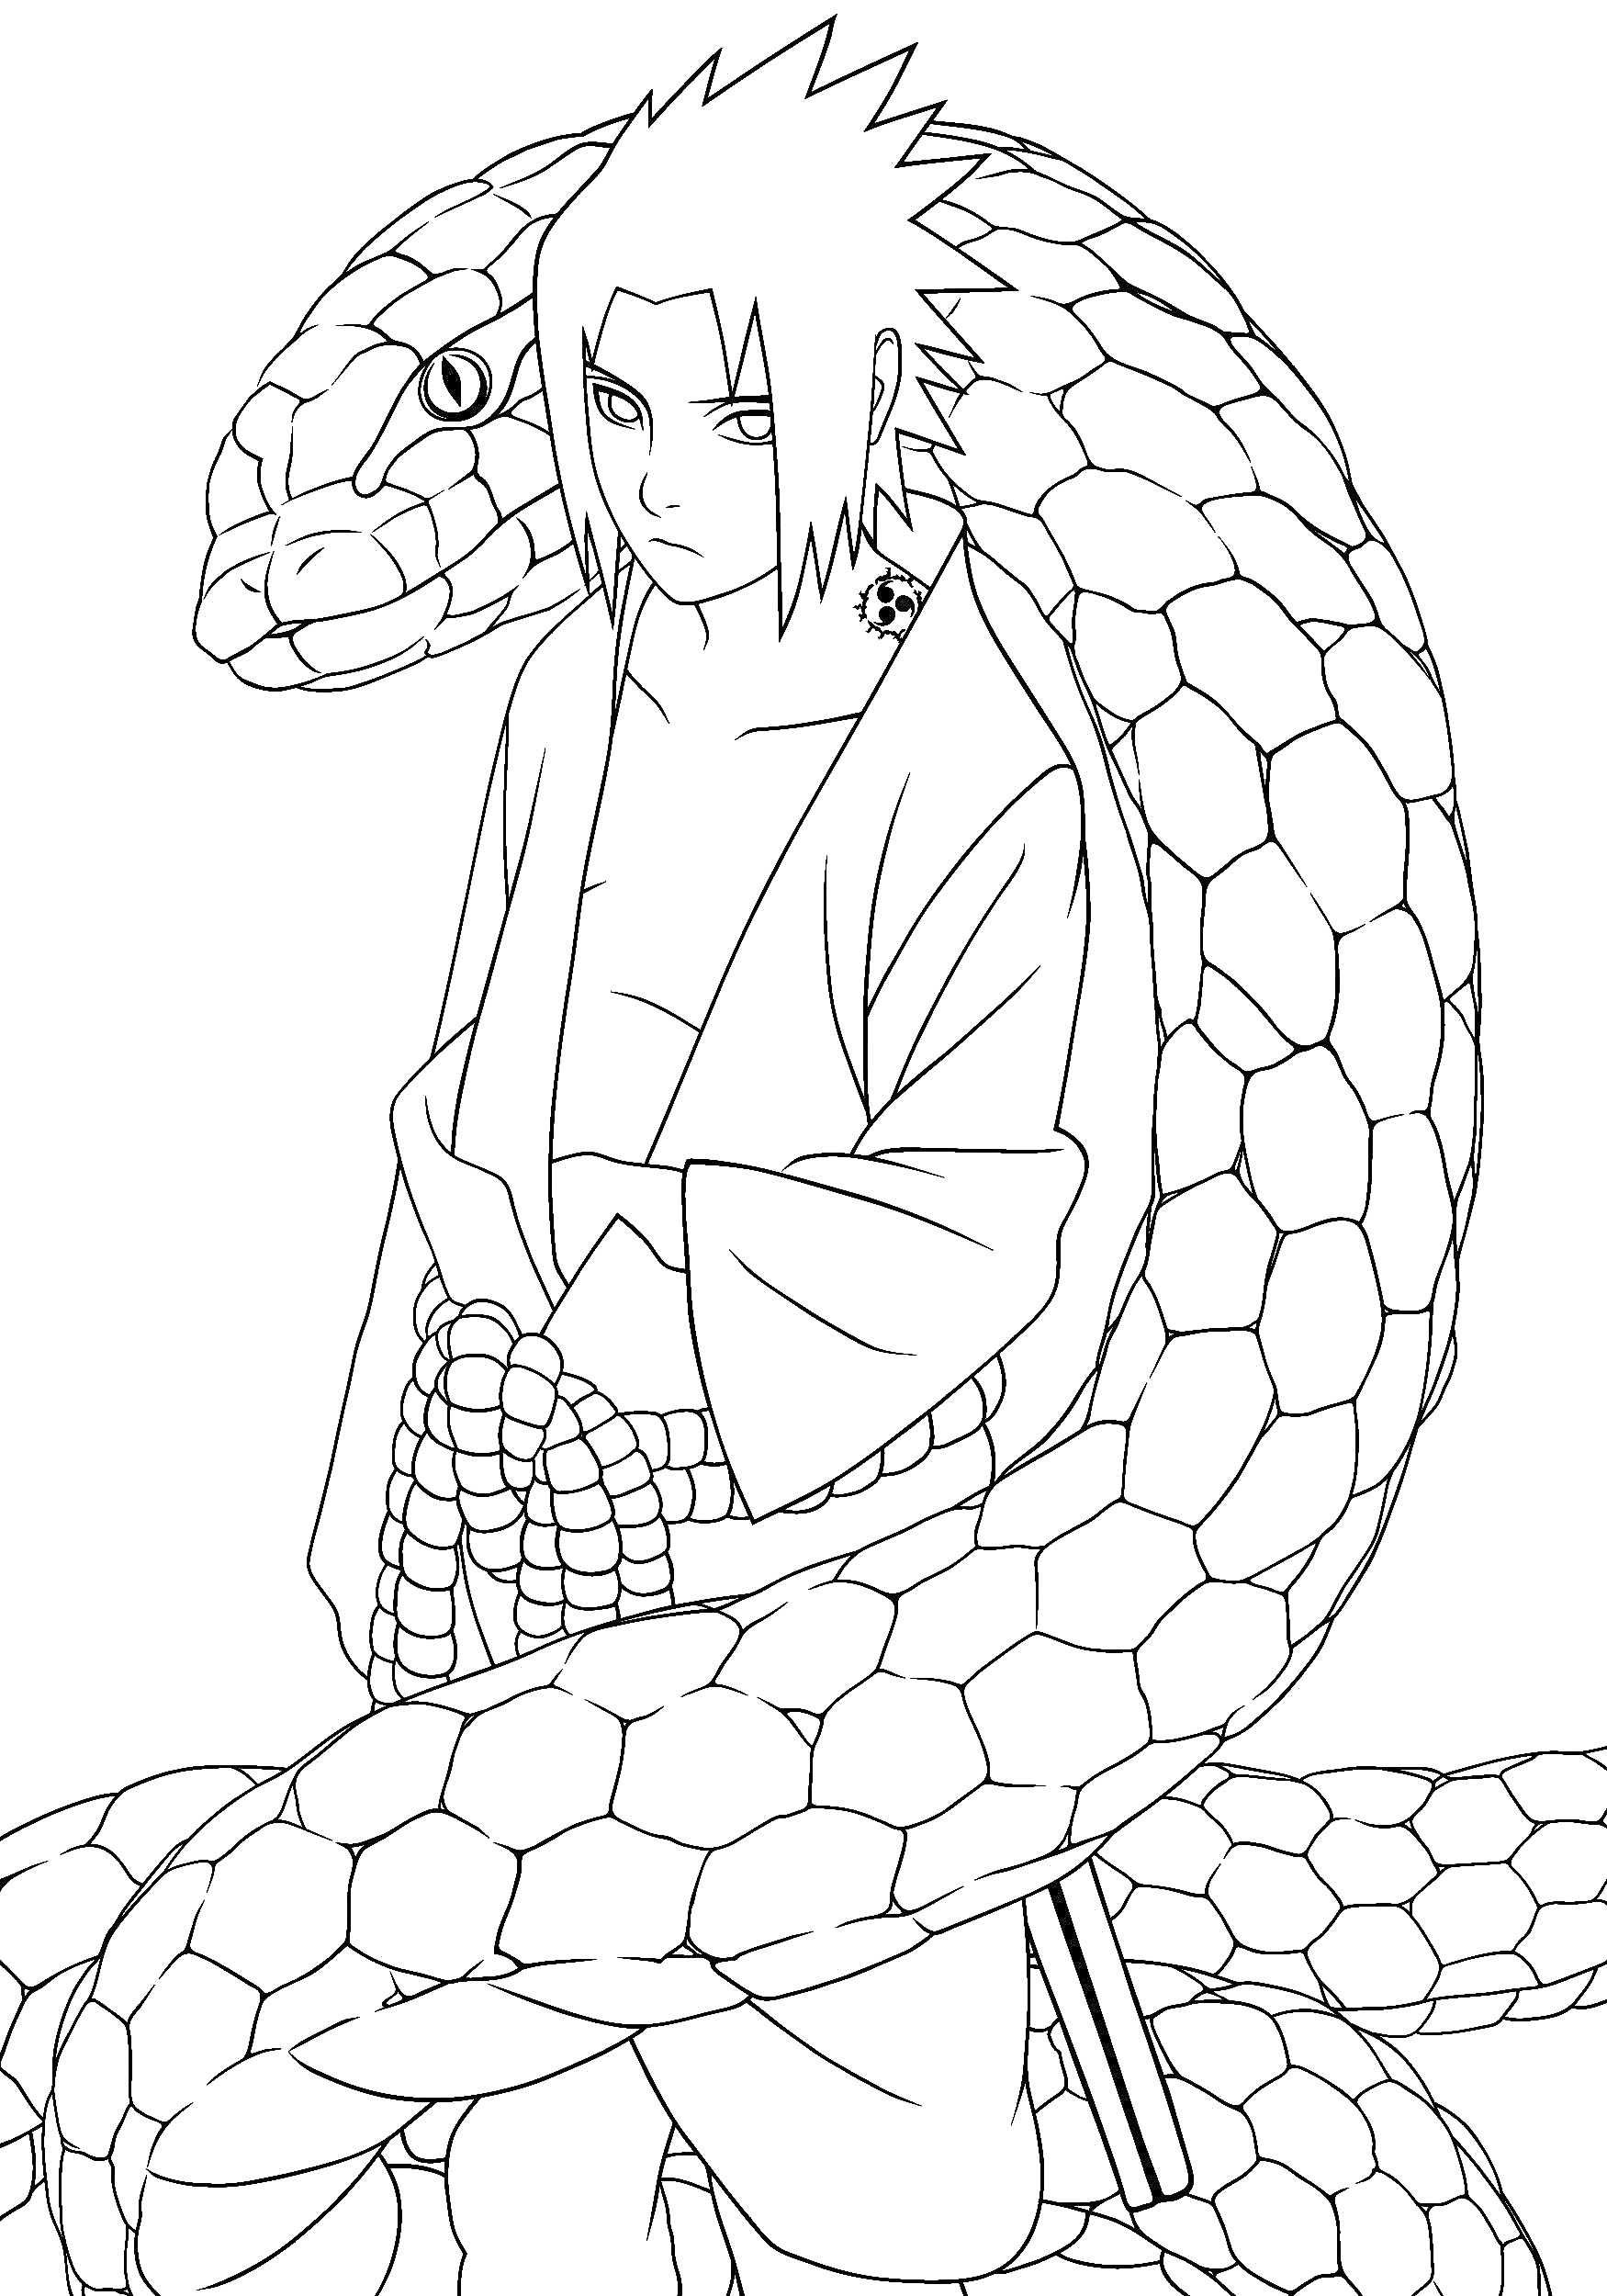 Человек в кимоно с поясом и мечом, обвитый огромной змеёй